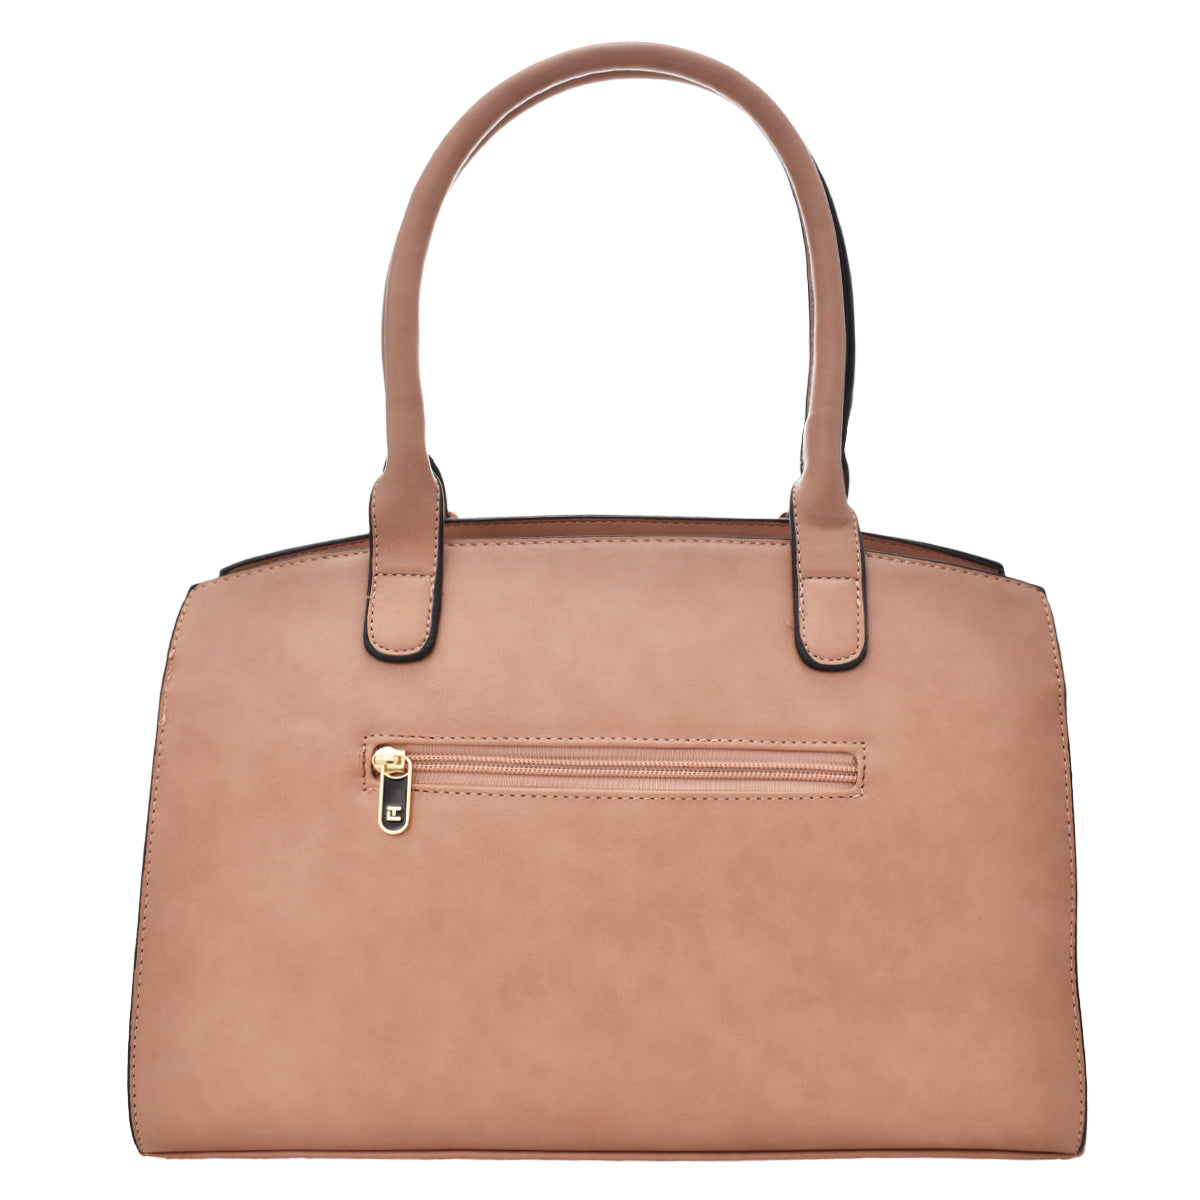 Bolsa Ted Lapidus tipo satchel con detalles dorados color rosa